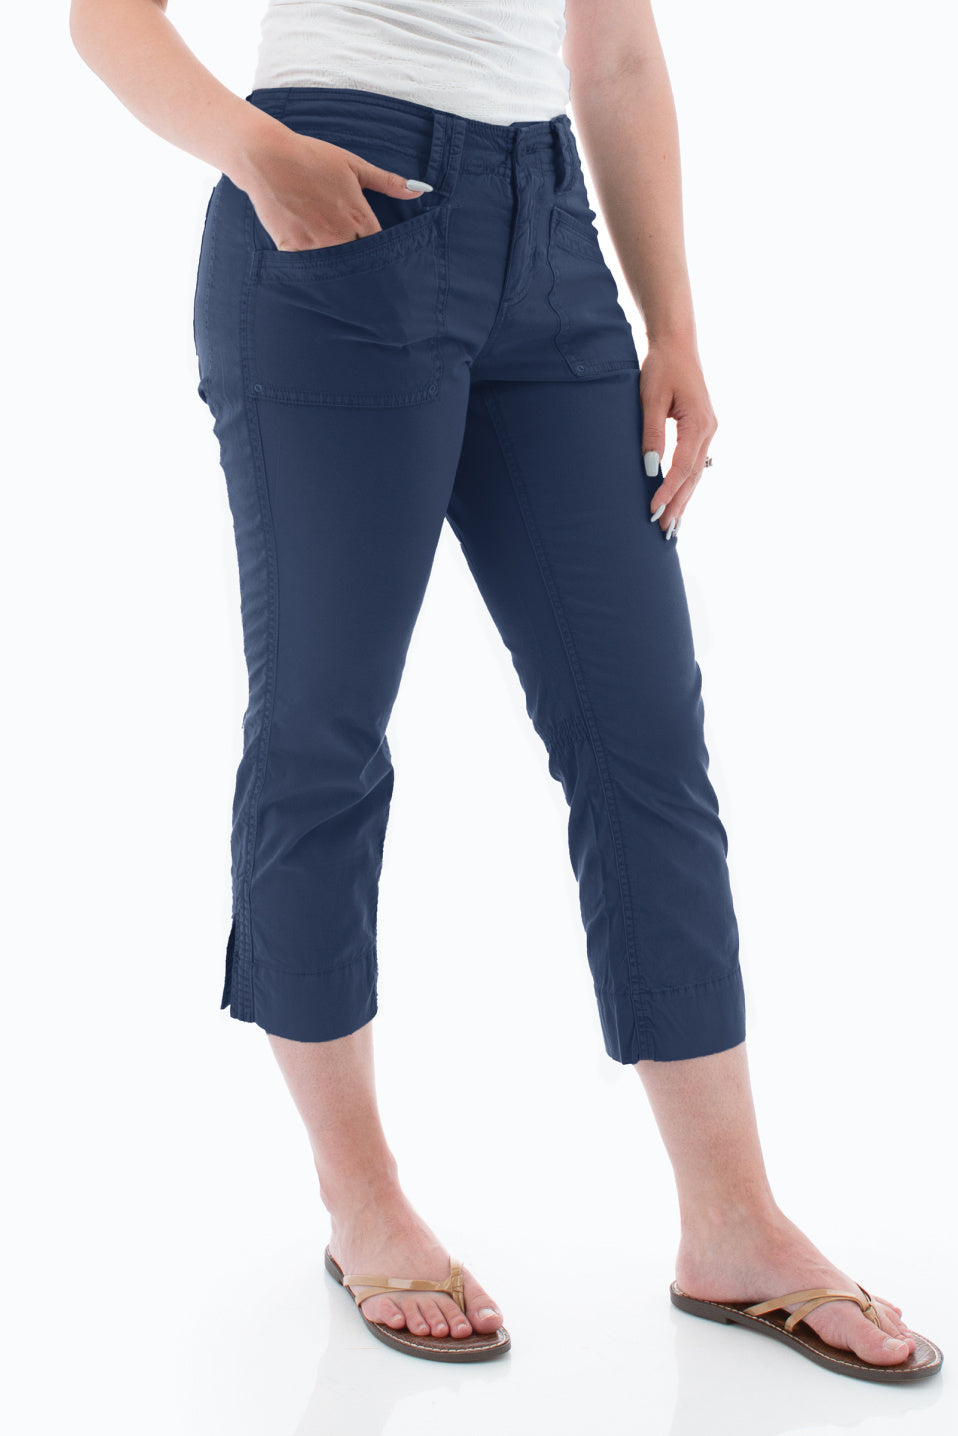 Kuhl Spandex Capri Pants for Women